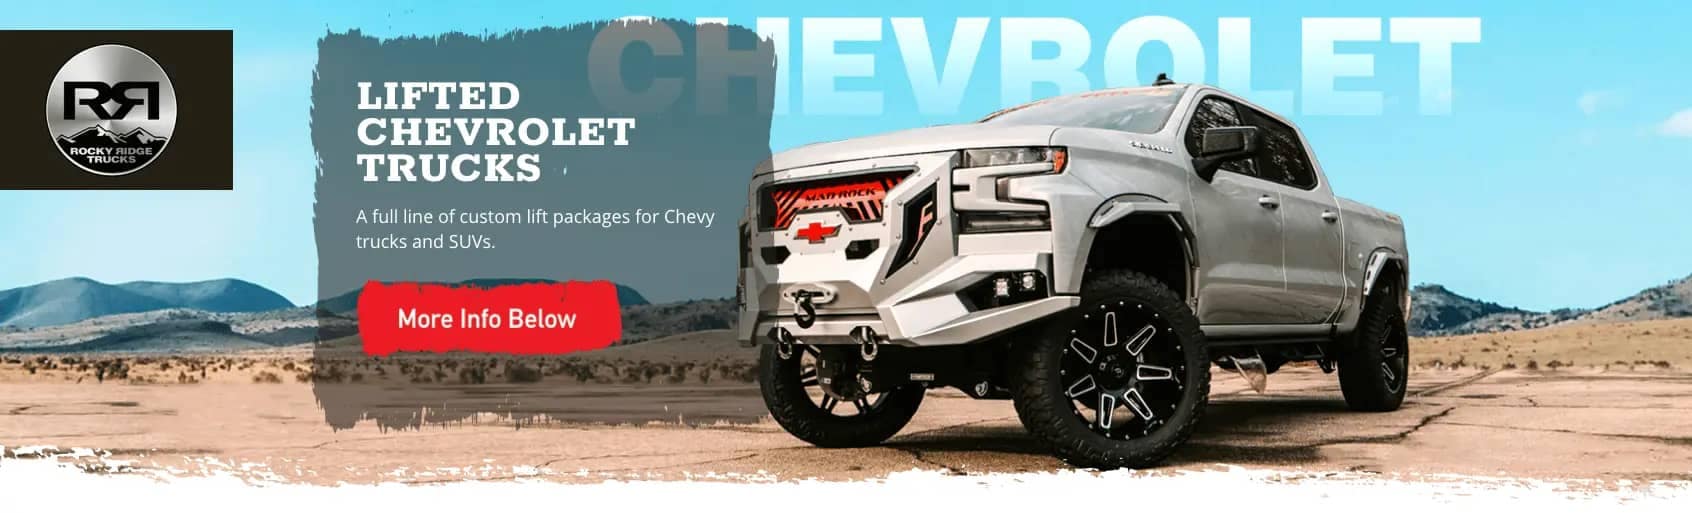 Rocky Ridge Trucks - Lifted Chevrolet Trucks banner